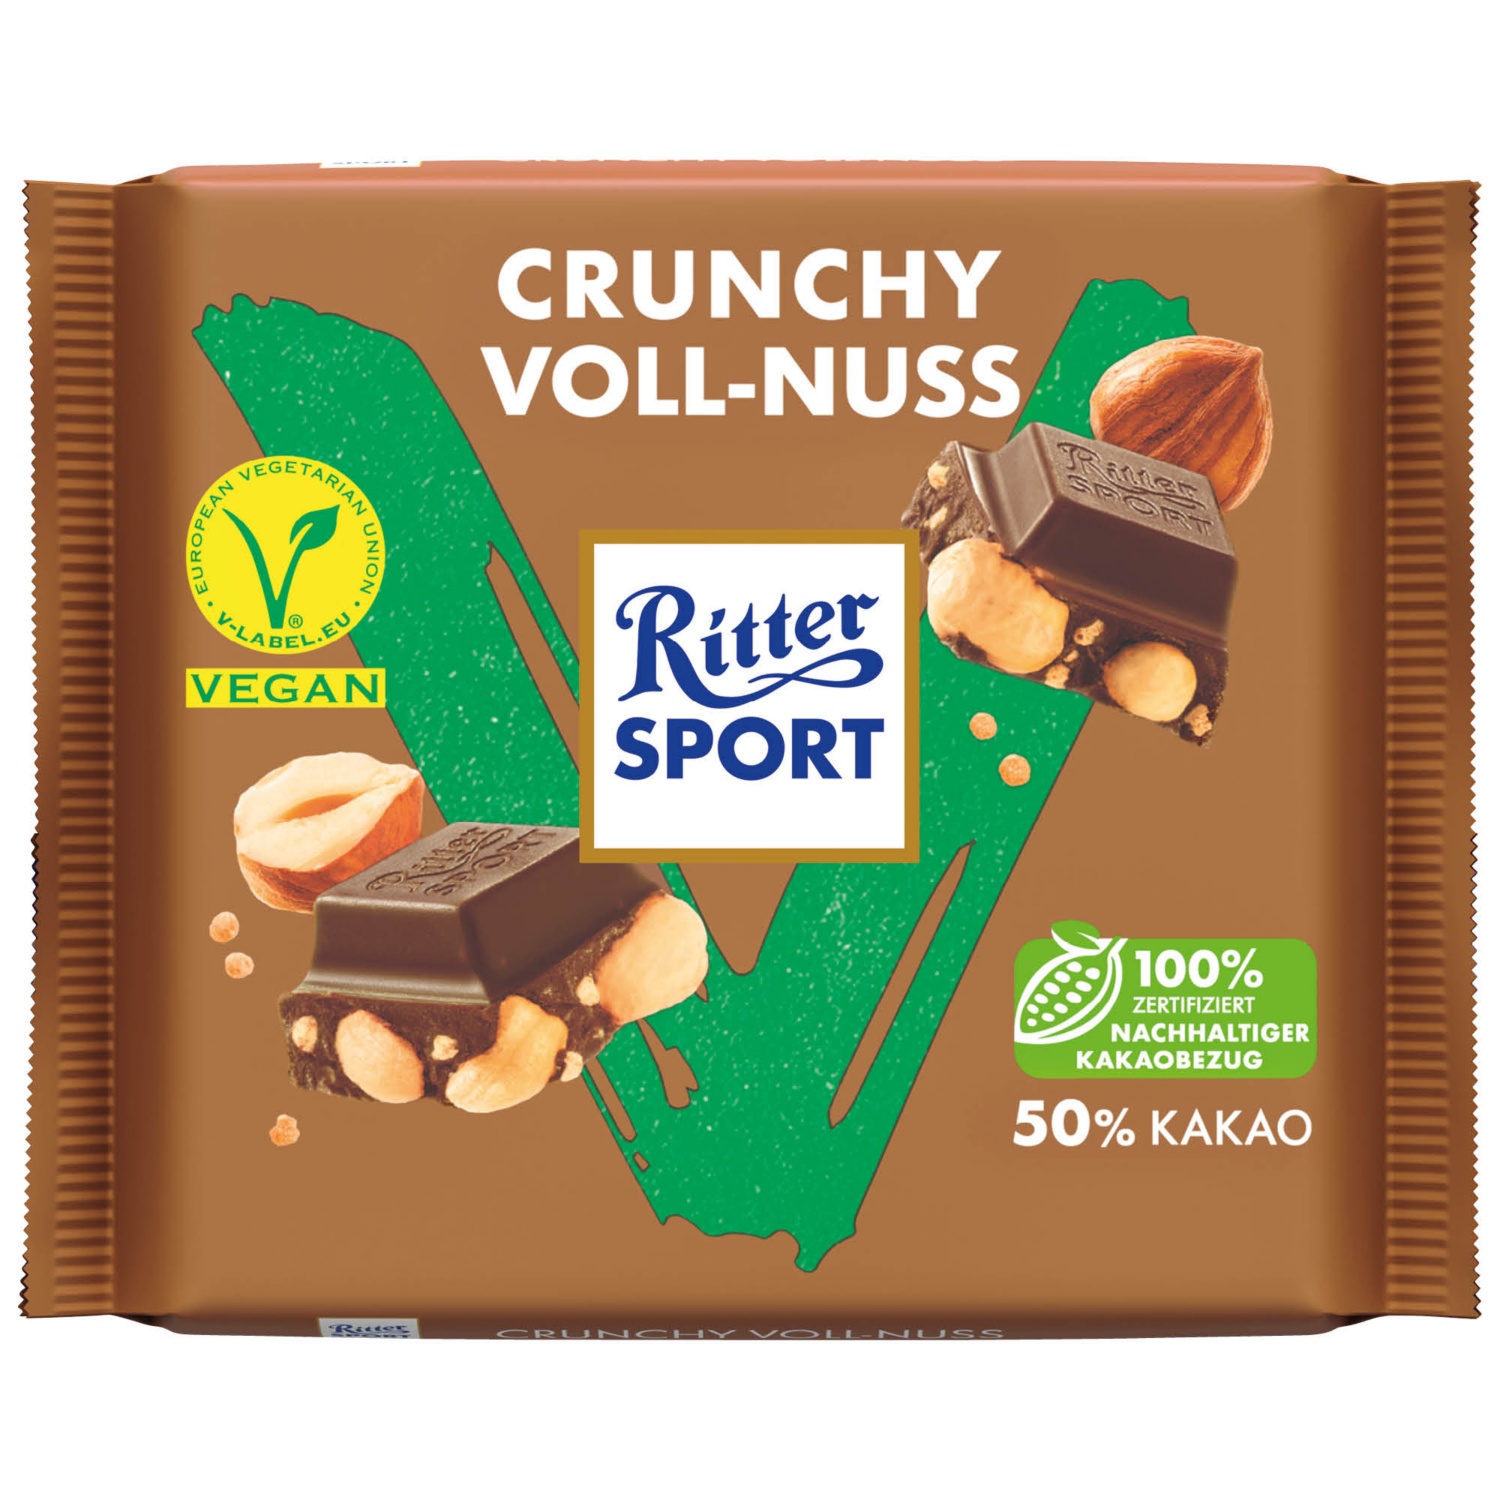 Ritter Sport Vegan, Crunchy Voll-Nuss